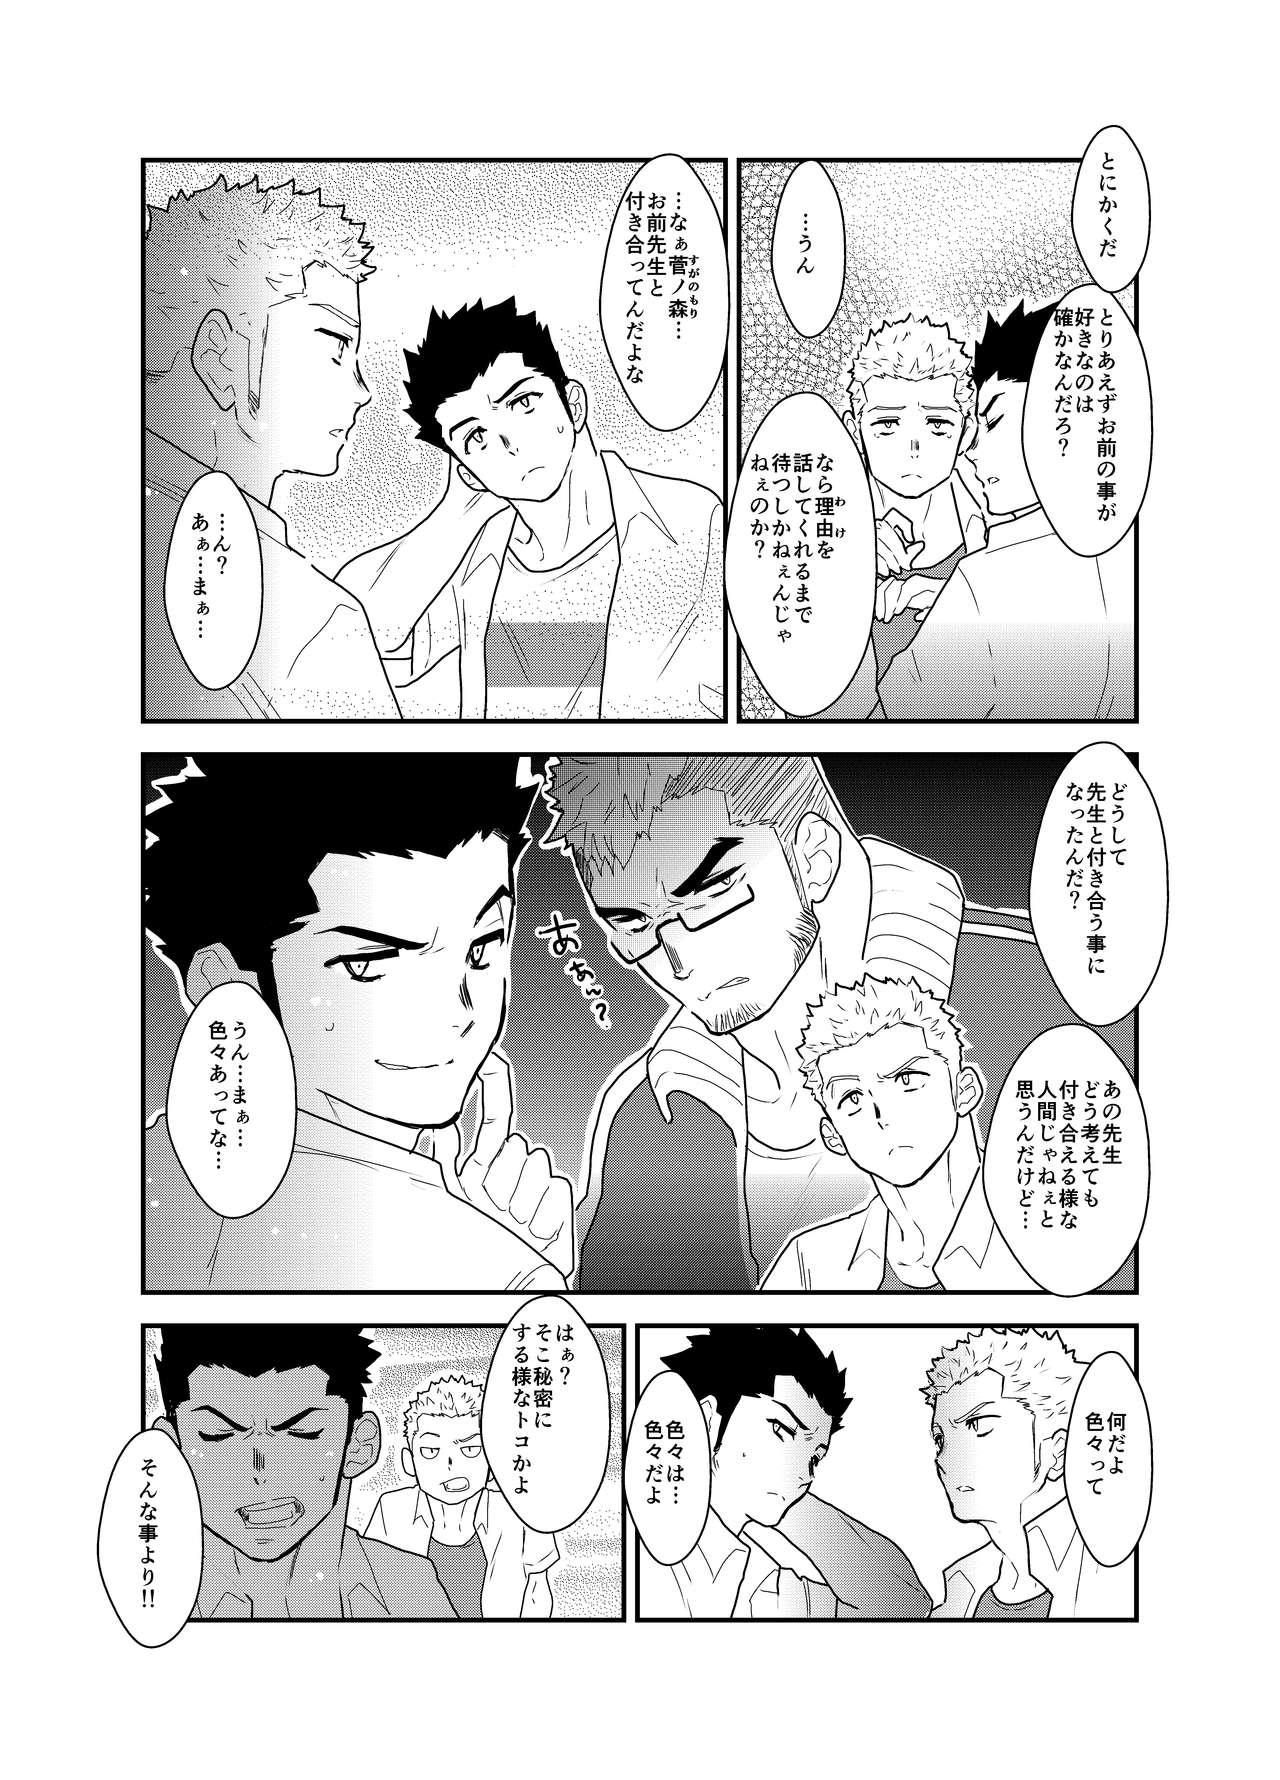 Bubble Aitsu ga Ore to Tsukiaenai Riyuu ga Mattaku Wakaranai no desu ga. - Original Masturbation - Page 6